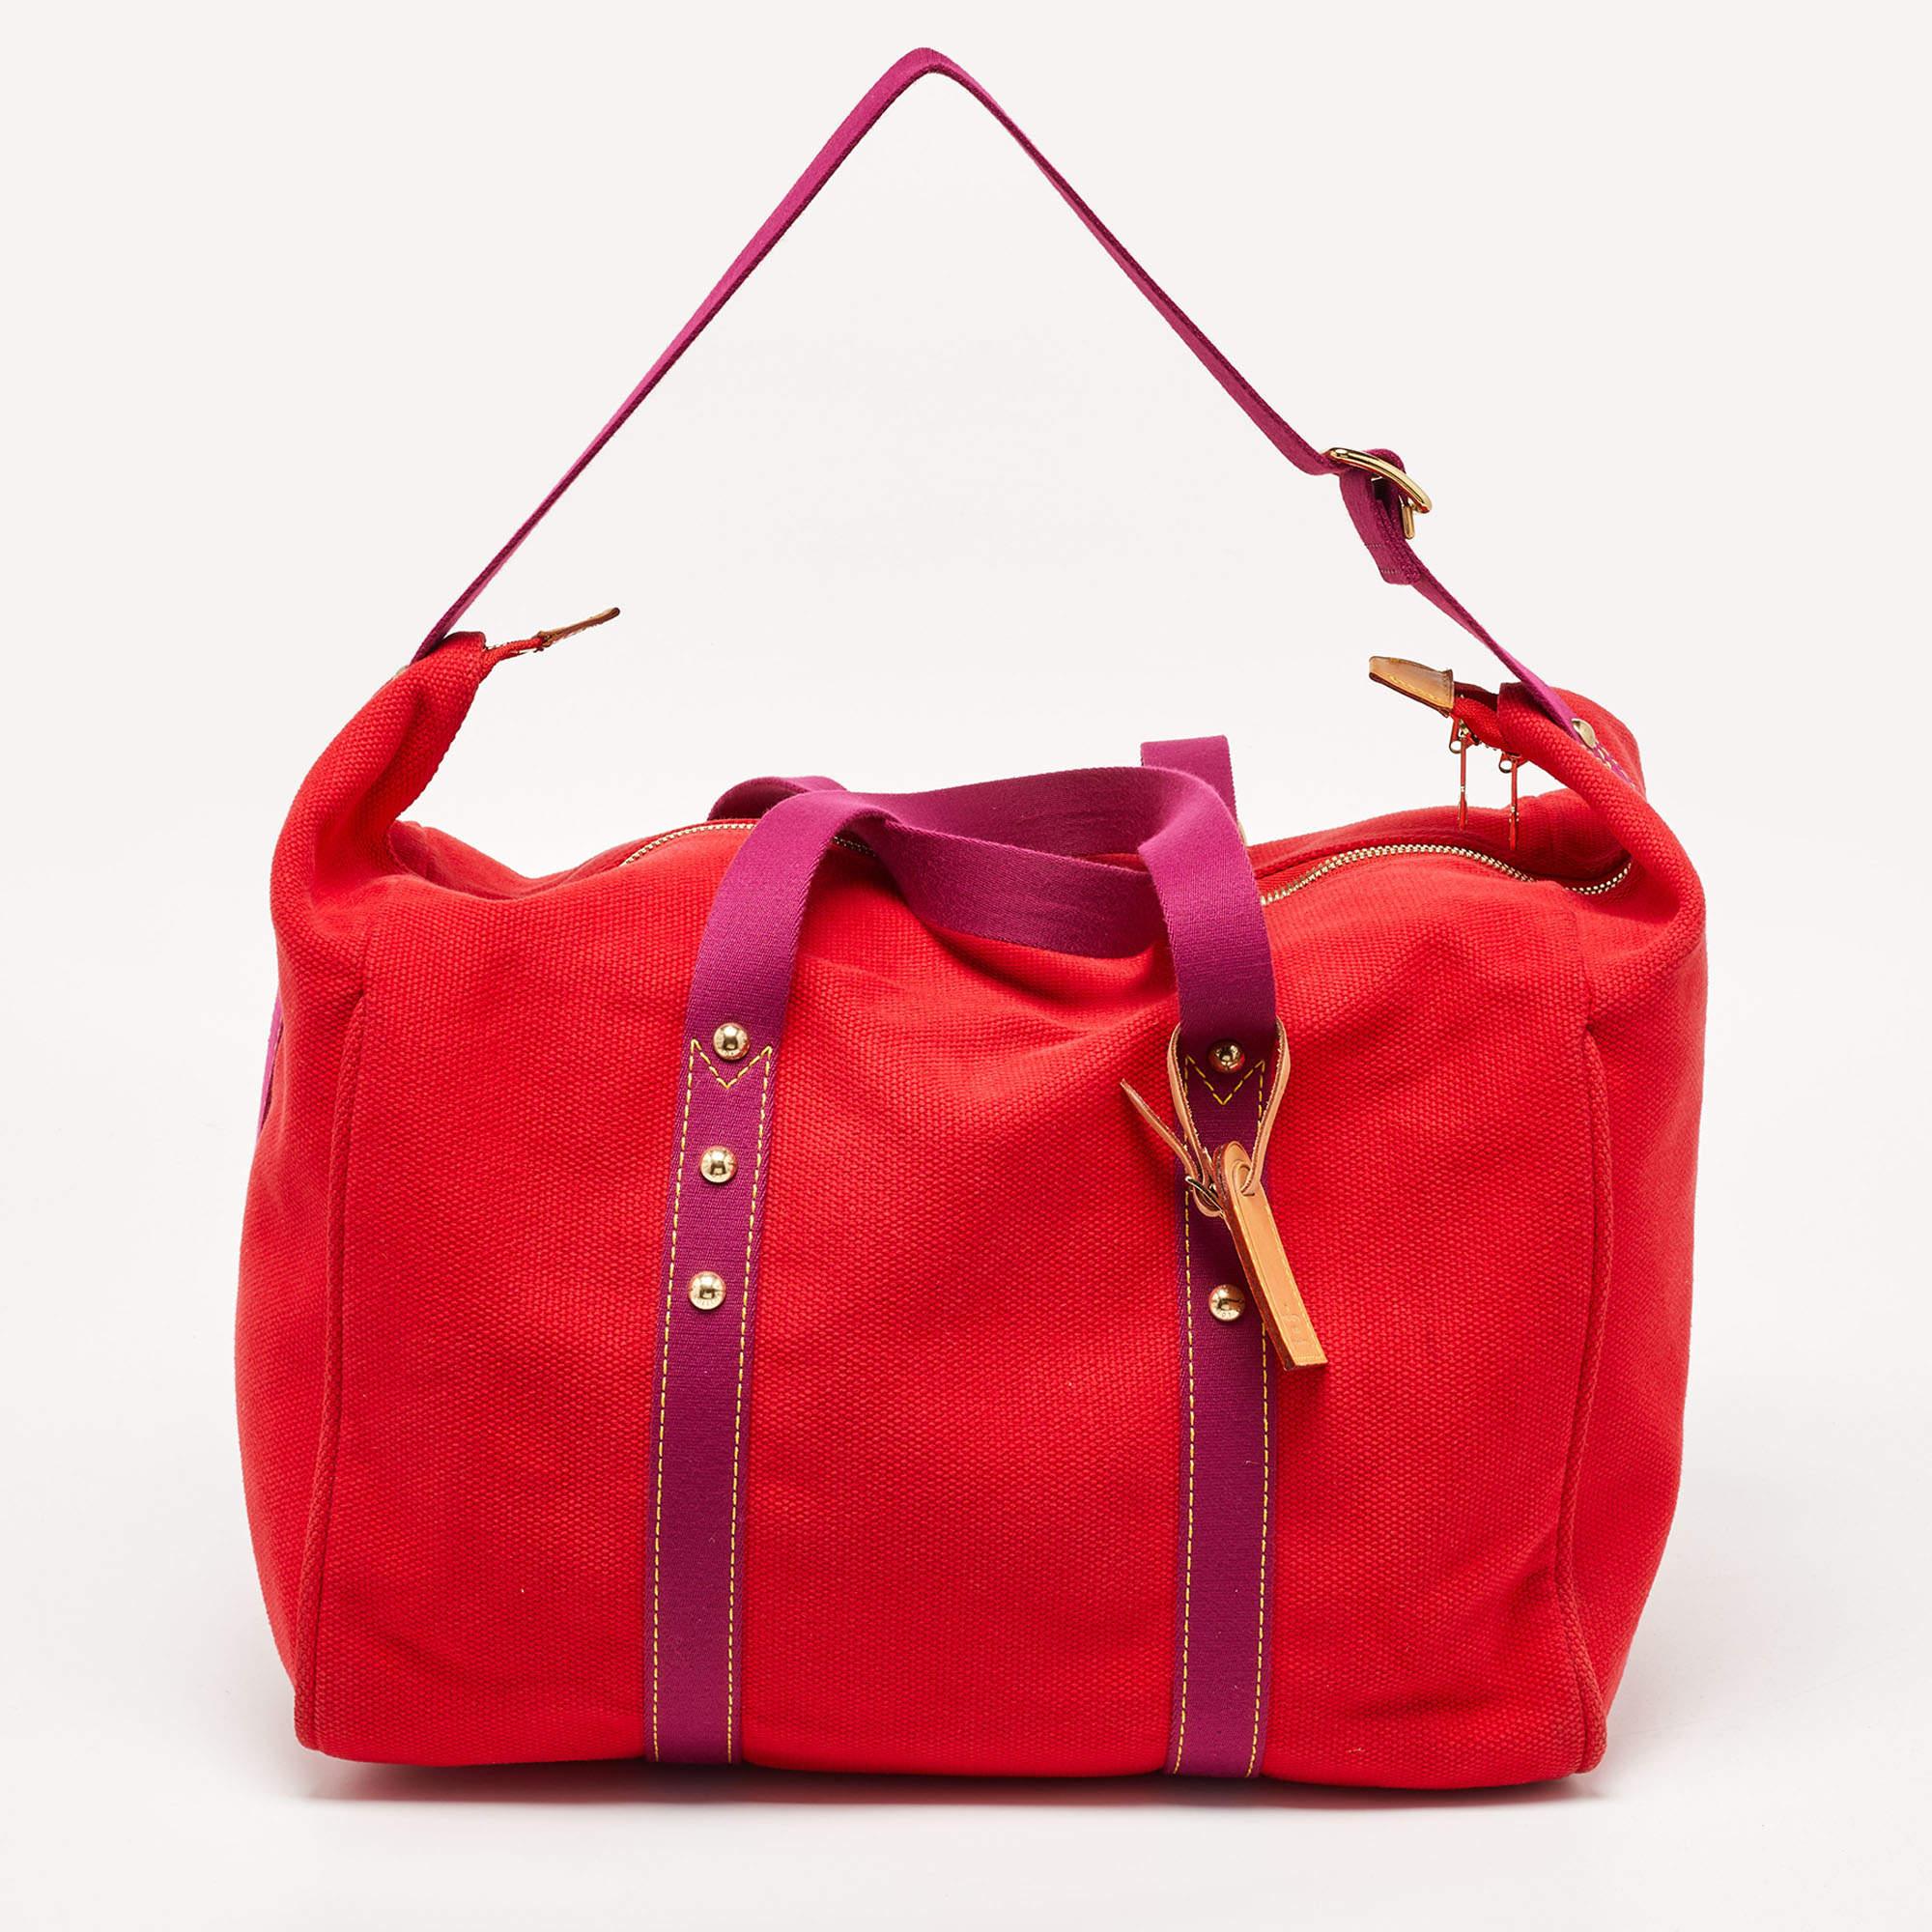 Parfait pour ranger vos essentiels en un seul endroit, ce sac de week-end Louis Vuitton Antigua Sac est un investissement qui en vaut la peine. Il présente des détails remarquables et offre un aspect de luxe.

